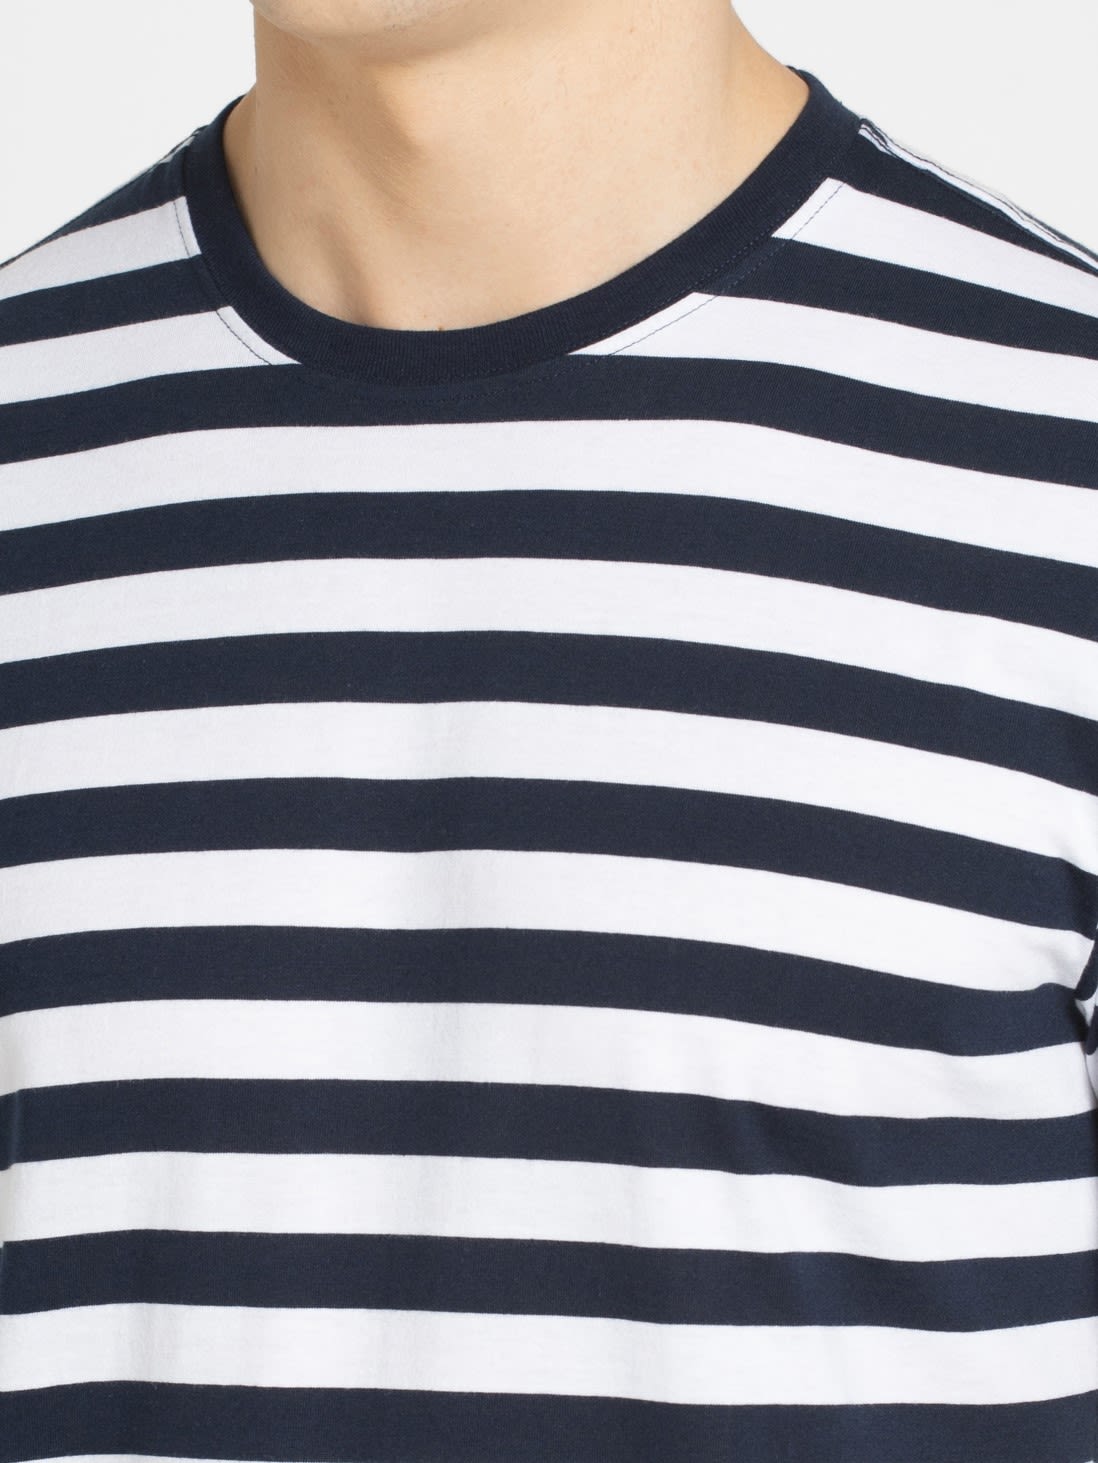 Buy Navy & White Striped Round Neck Men's Half Sleeve T-Shirt for Men ...